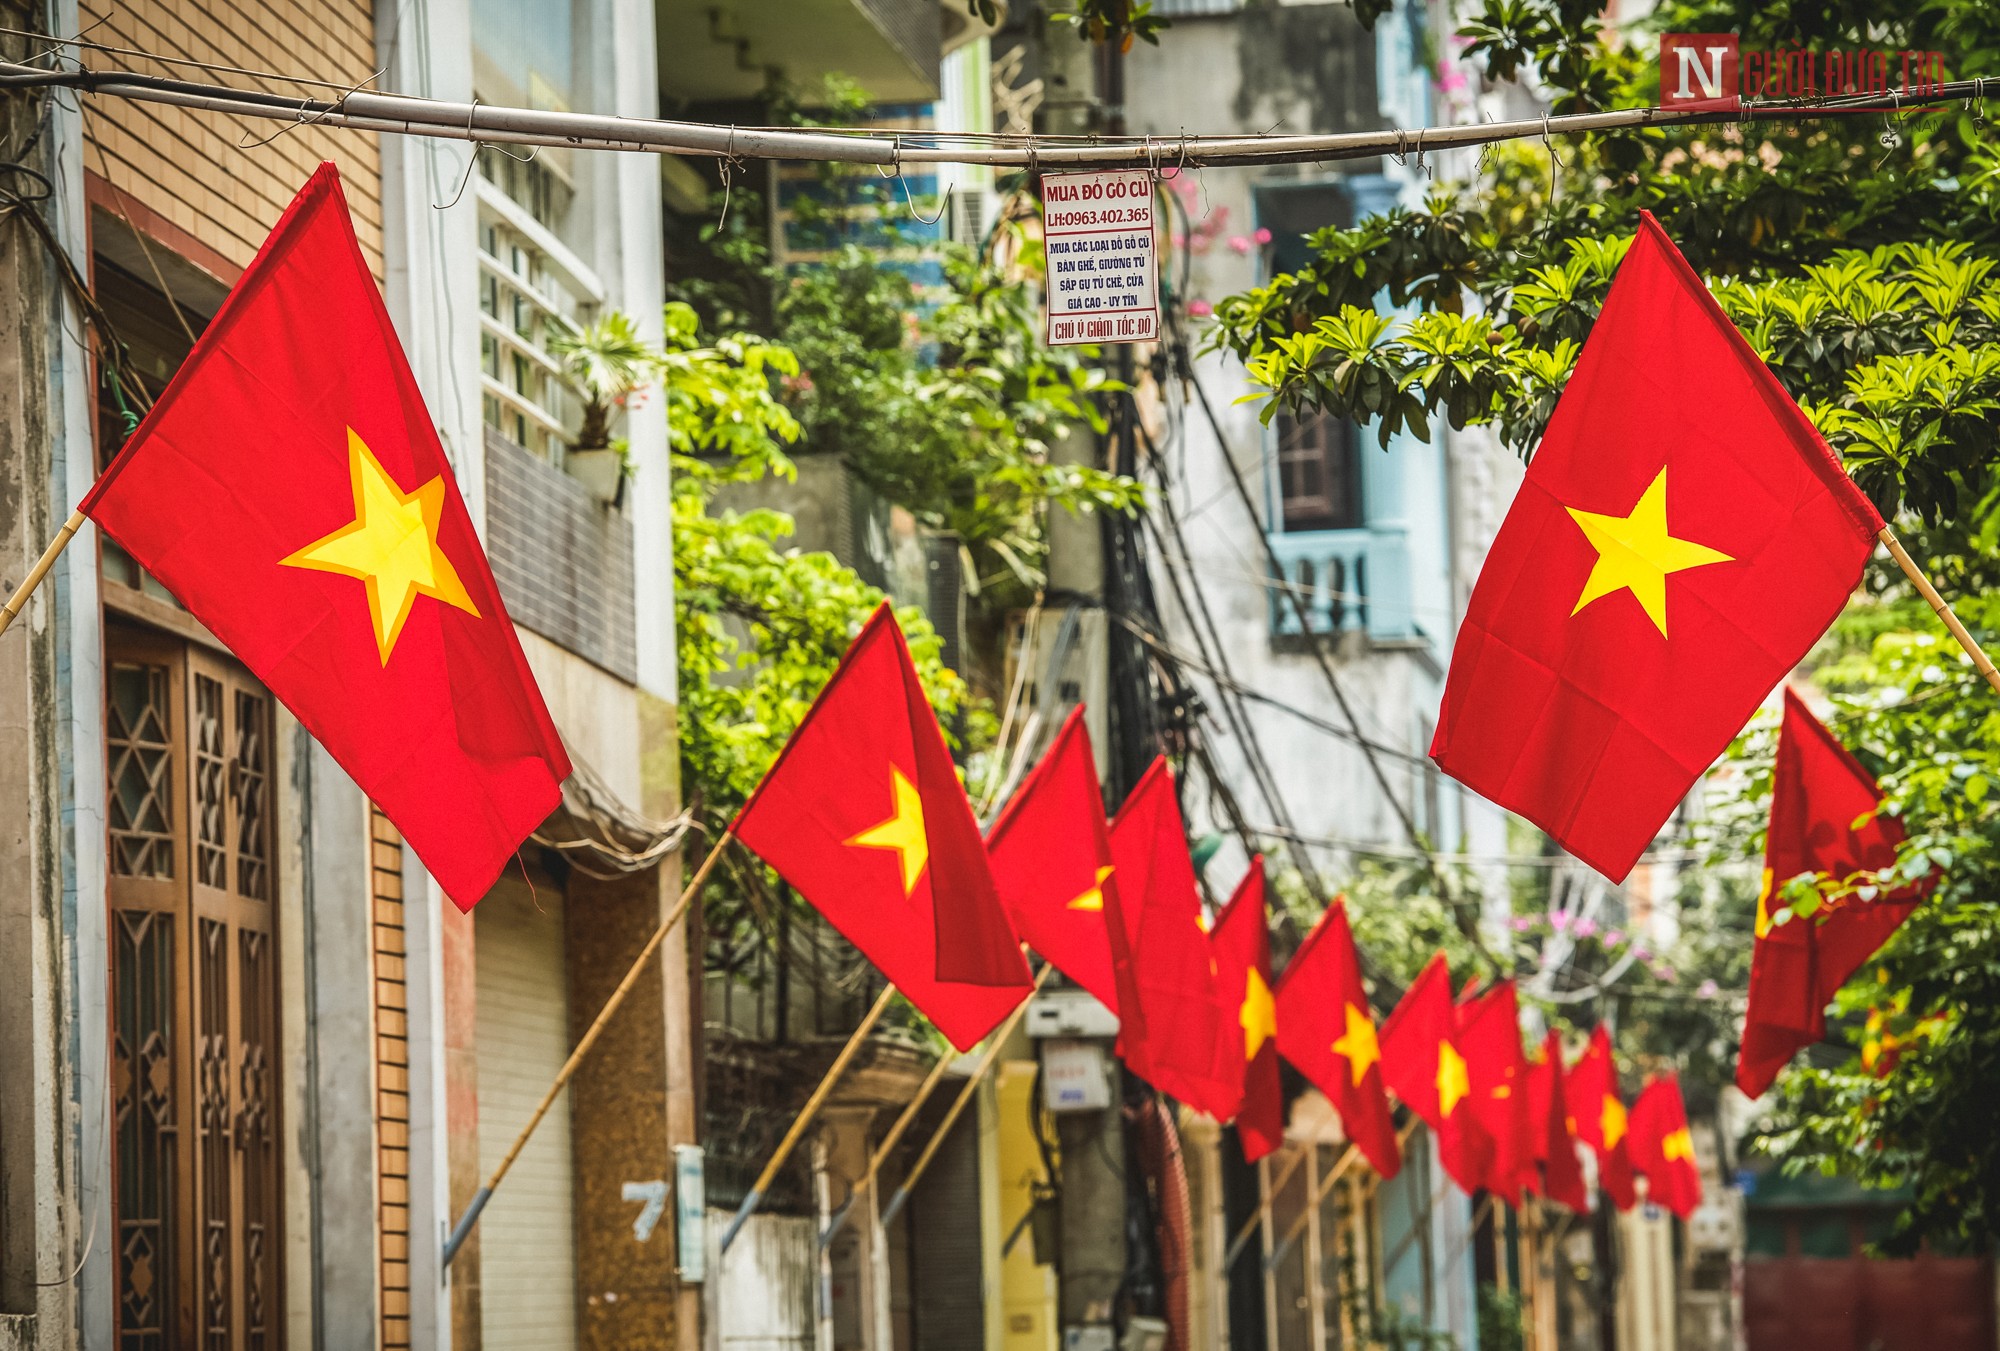 Cờ tổ quốc: Cờ tổ quốc là biểu tượng tươi sáng, đầy ý nghĩa của đất nước. Với những cột màu đỏ trắng xanh nổi bật, cờ tổ quốc thể hiện tinh thần cách mạng và độc lập của Việt Nam. Hãy xem những hình ảnh cờ tổ quốc để hiểu thêm về lịch sử và văn hoá Việt Nam.